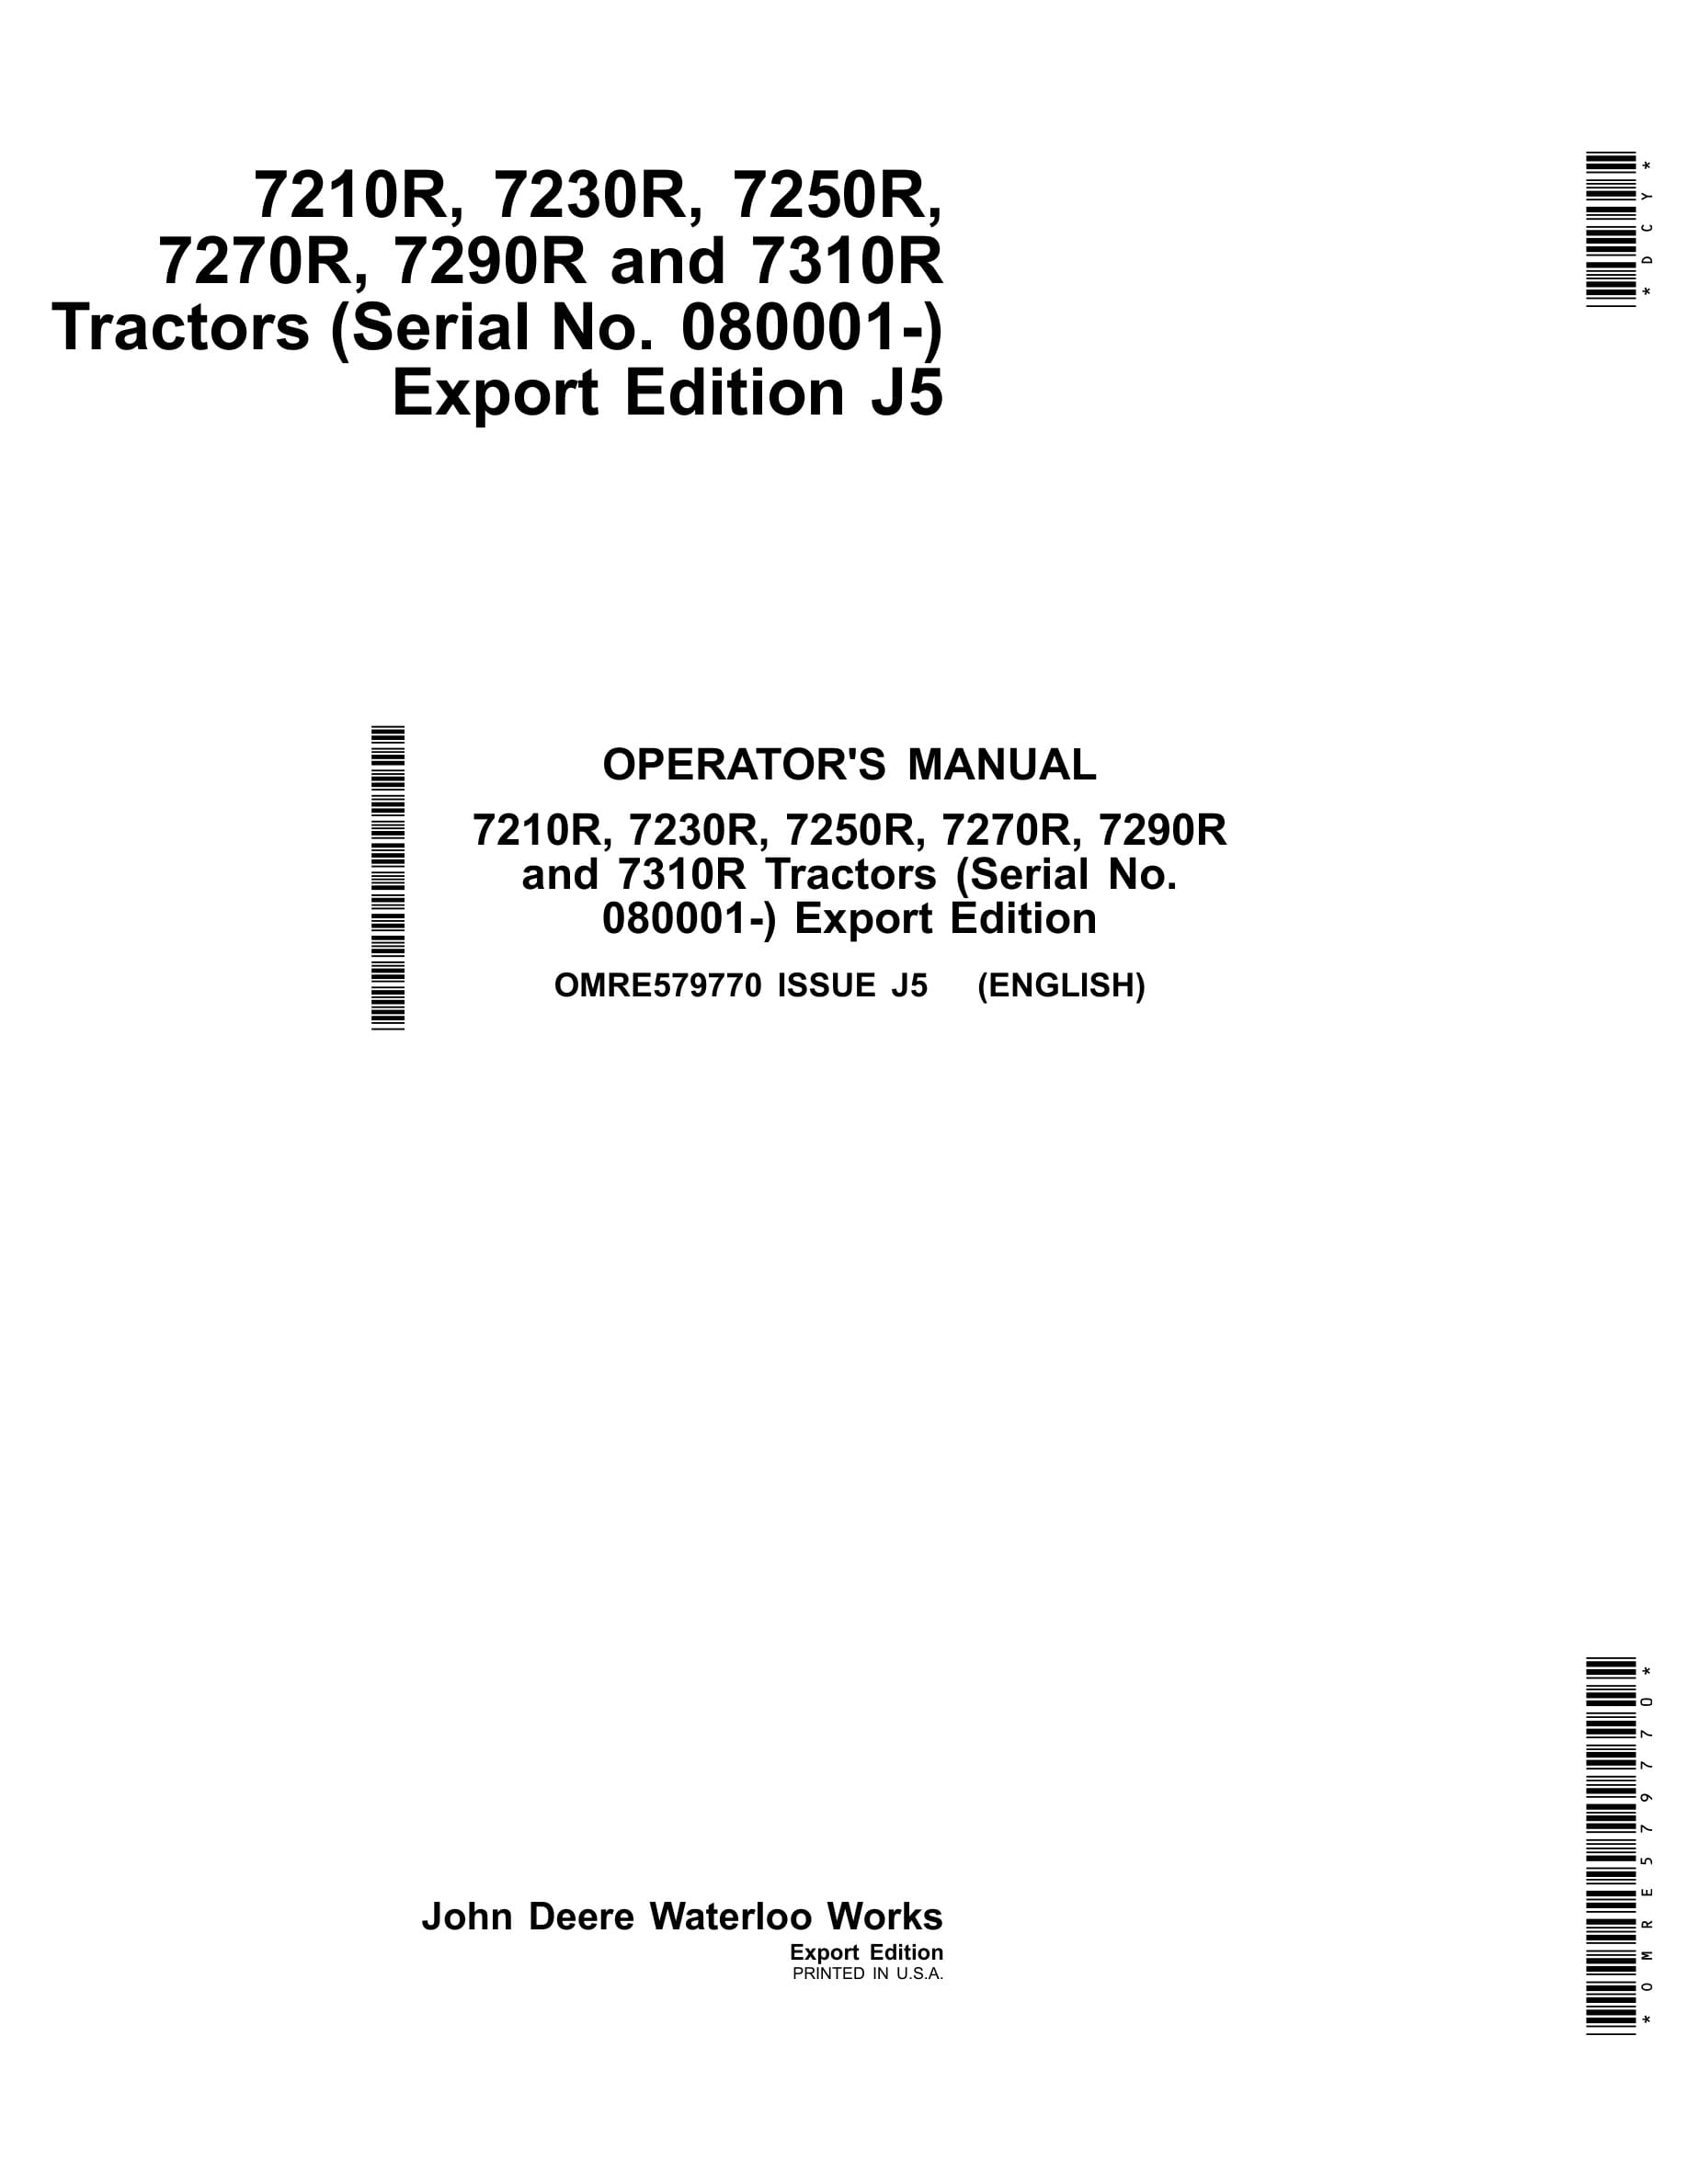 John Deere 7210r, 7230r, 7250r, 7270r, 7290r And 7310r Tractors Operator Manuals OMRE579770-1